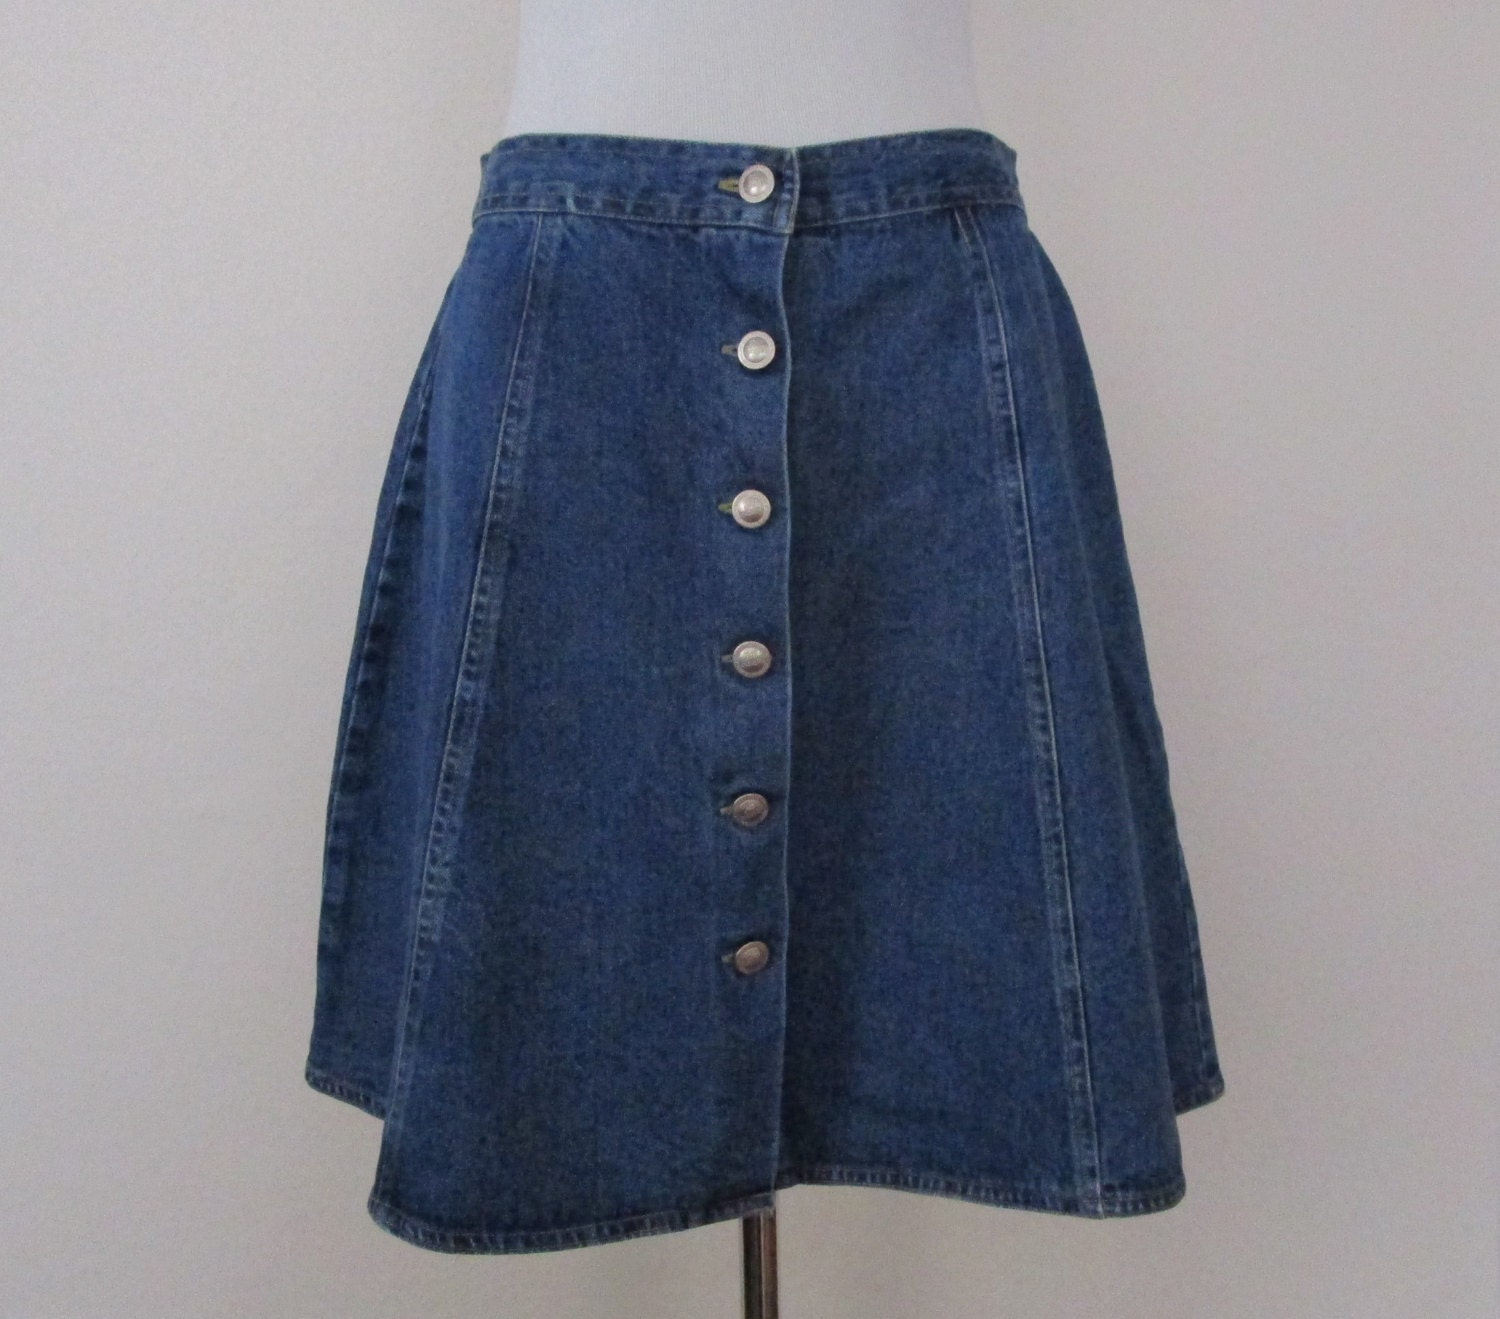 90s Mini Skirt Denim Skirt Vintage Button Front Skirt Dark